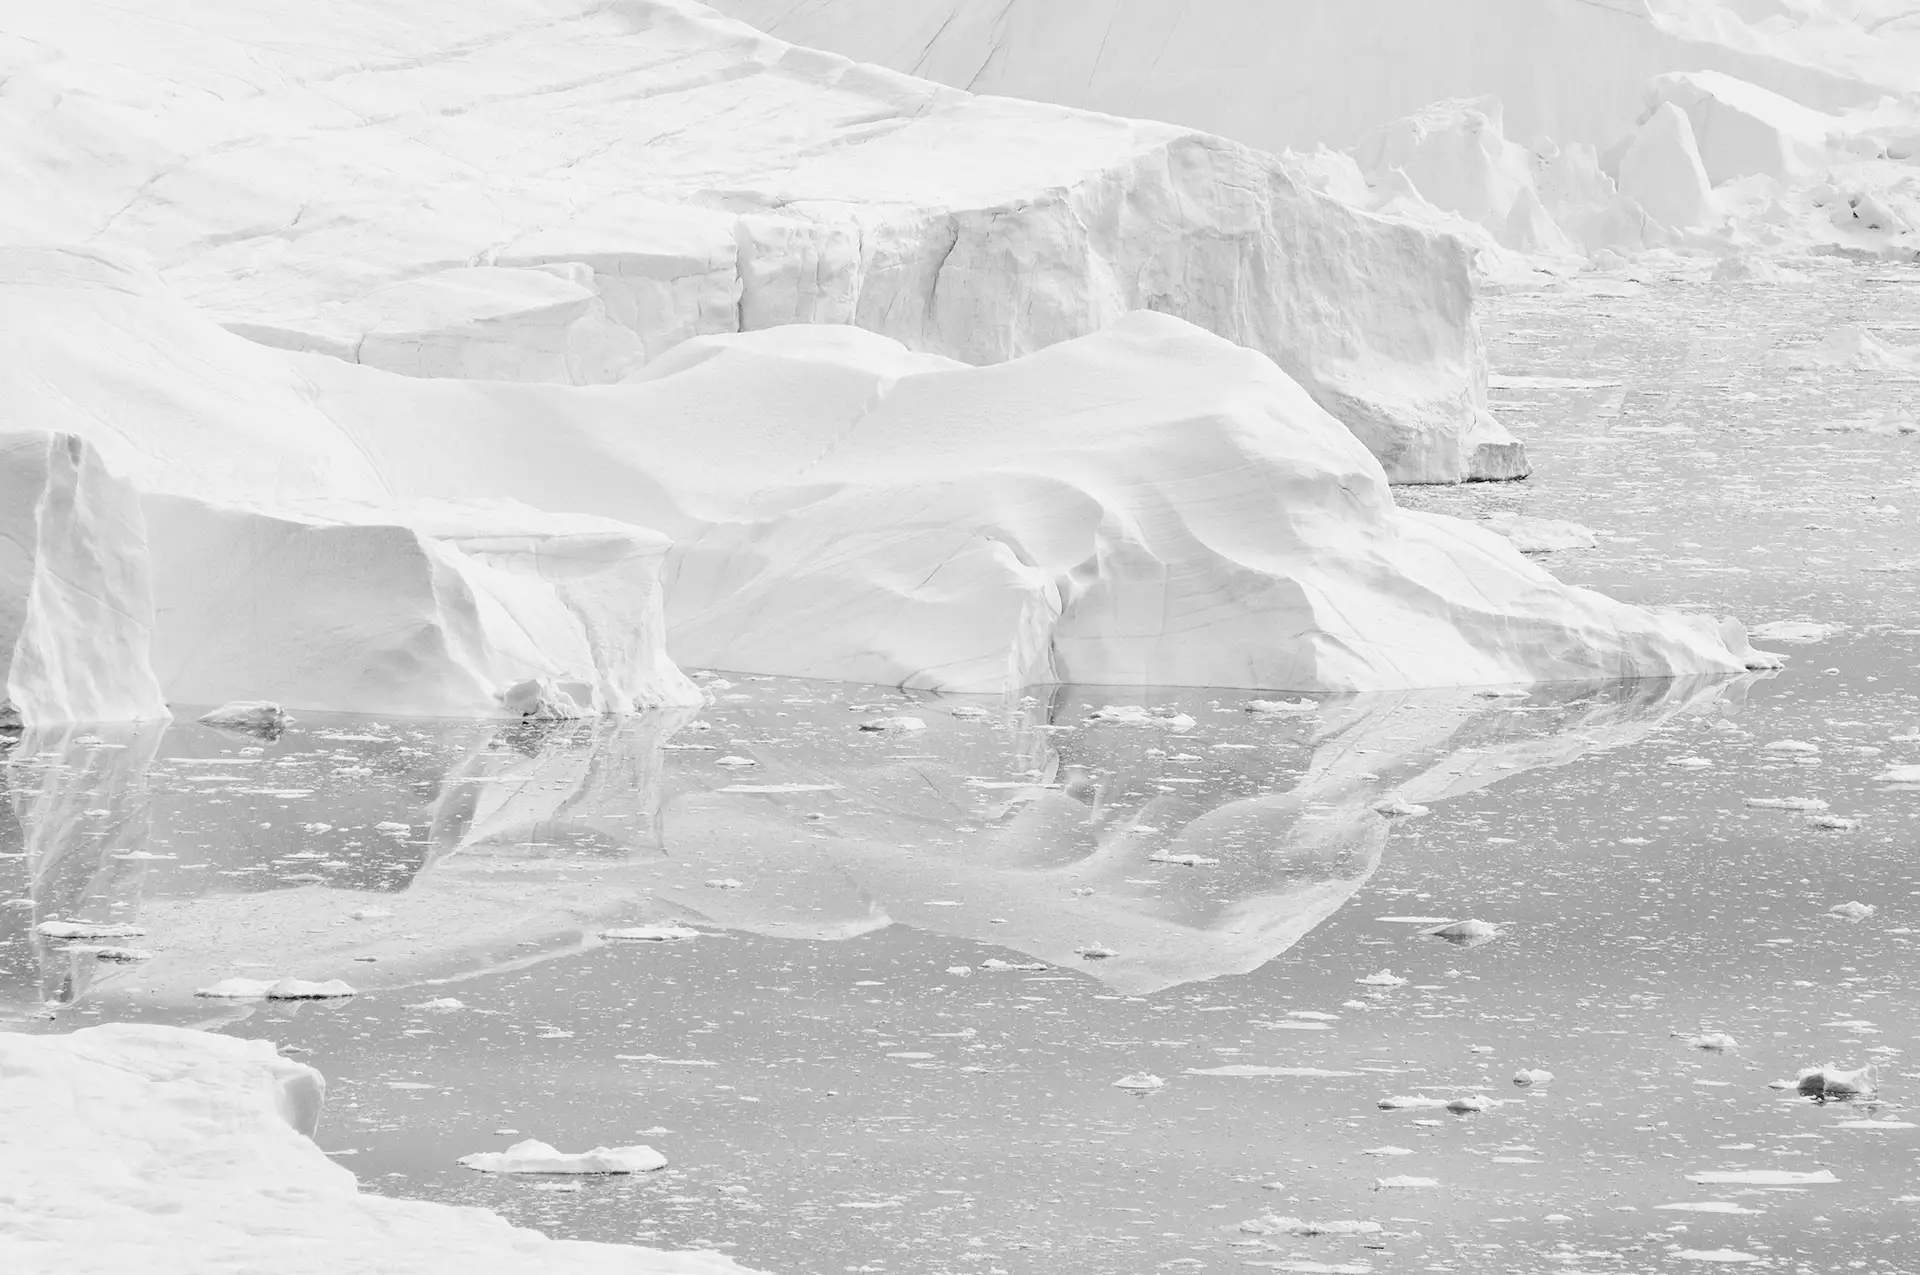 Groenlandia. Región polar ártica. Desde los años 90, la pérdida de hielo en esta isla americana se ha multiplicado por 7 según la revista 'Nature' / Foto: Alfons Rodríguez